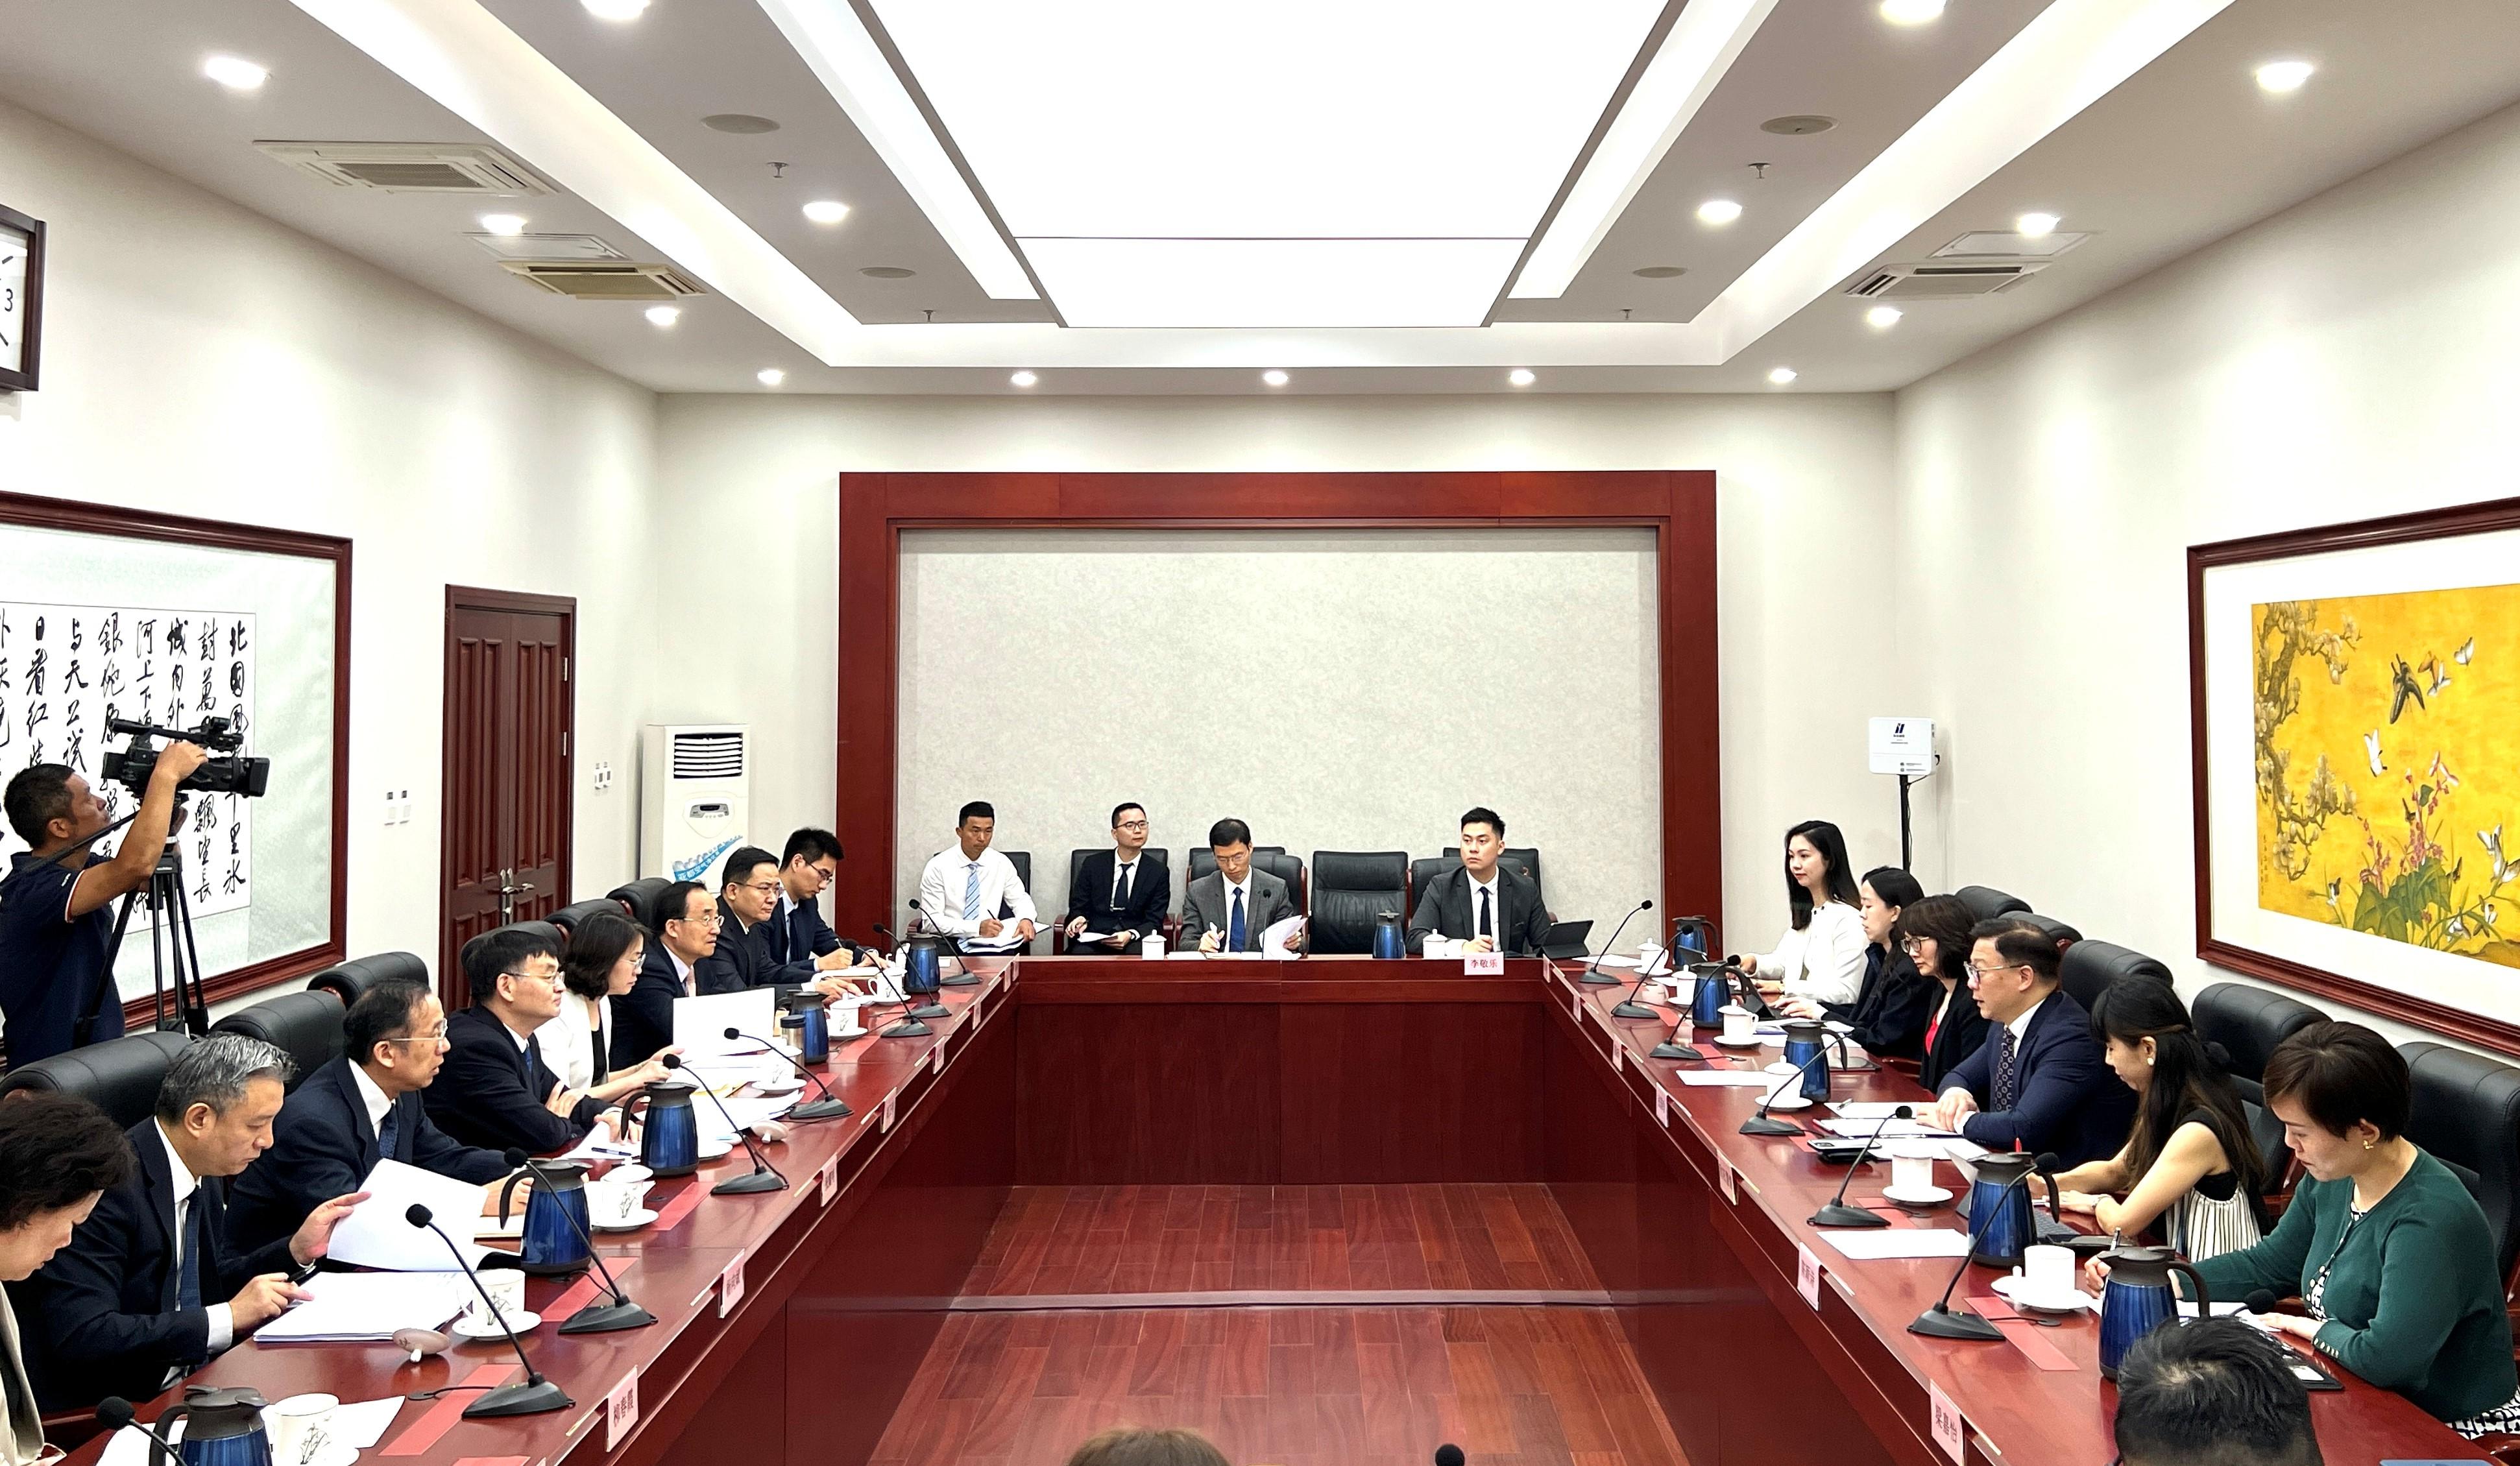 律政司副司长张国钧（右三）今日（六月十四日）在北京拜访司法部，与司法部副部长胡卫列（左四）会晤 。

